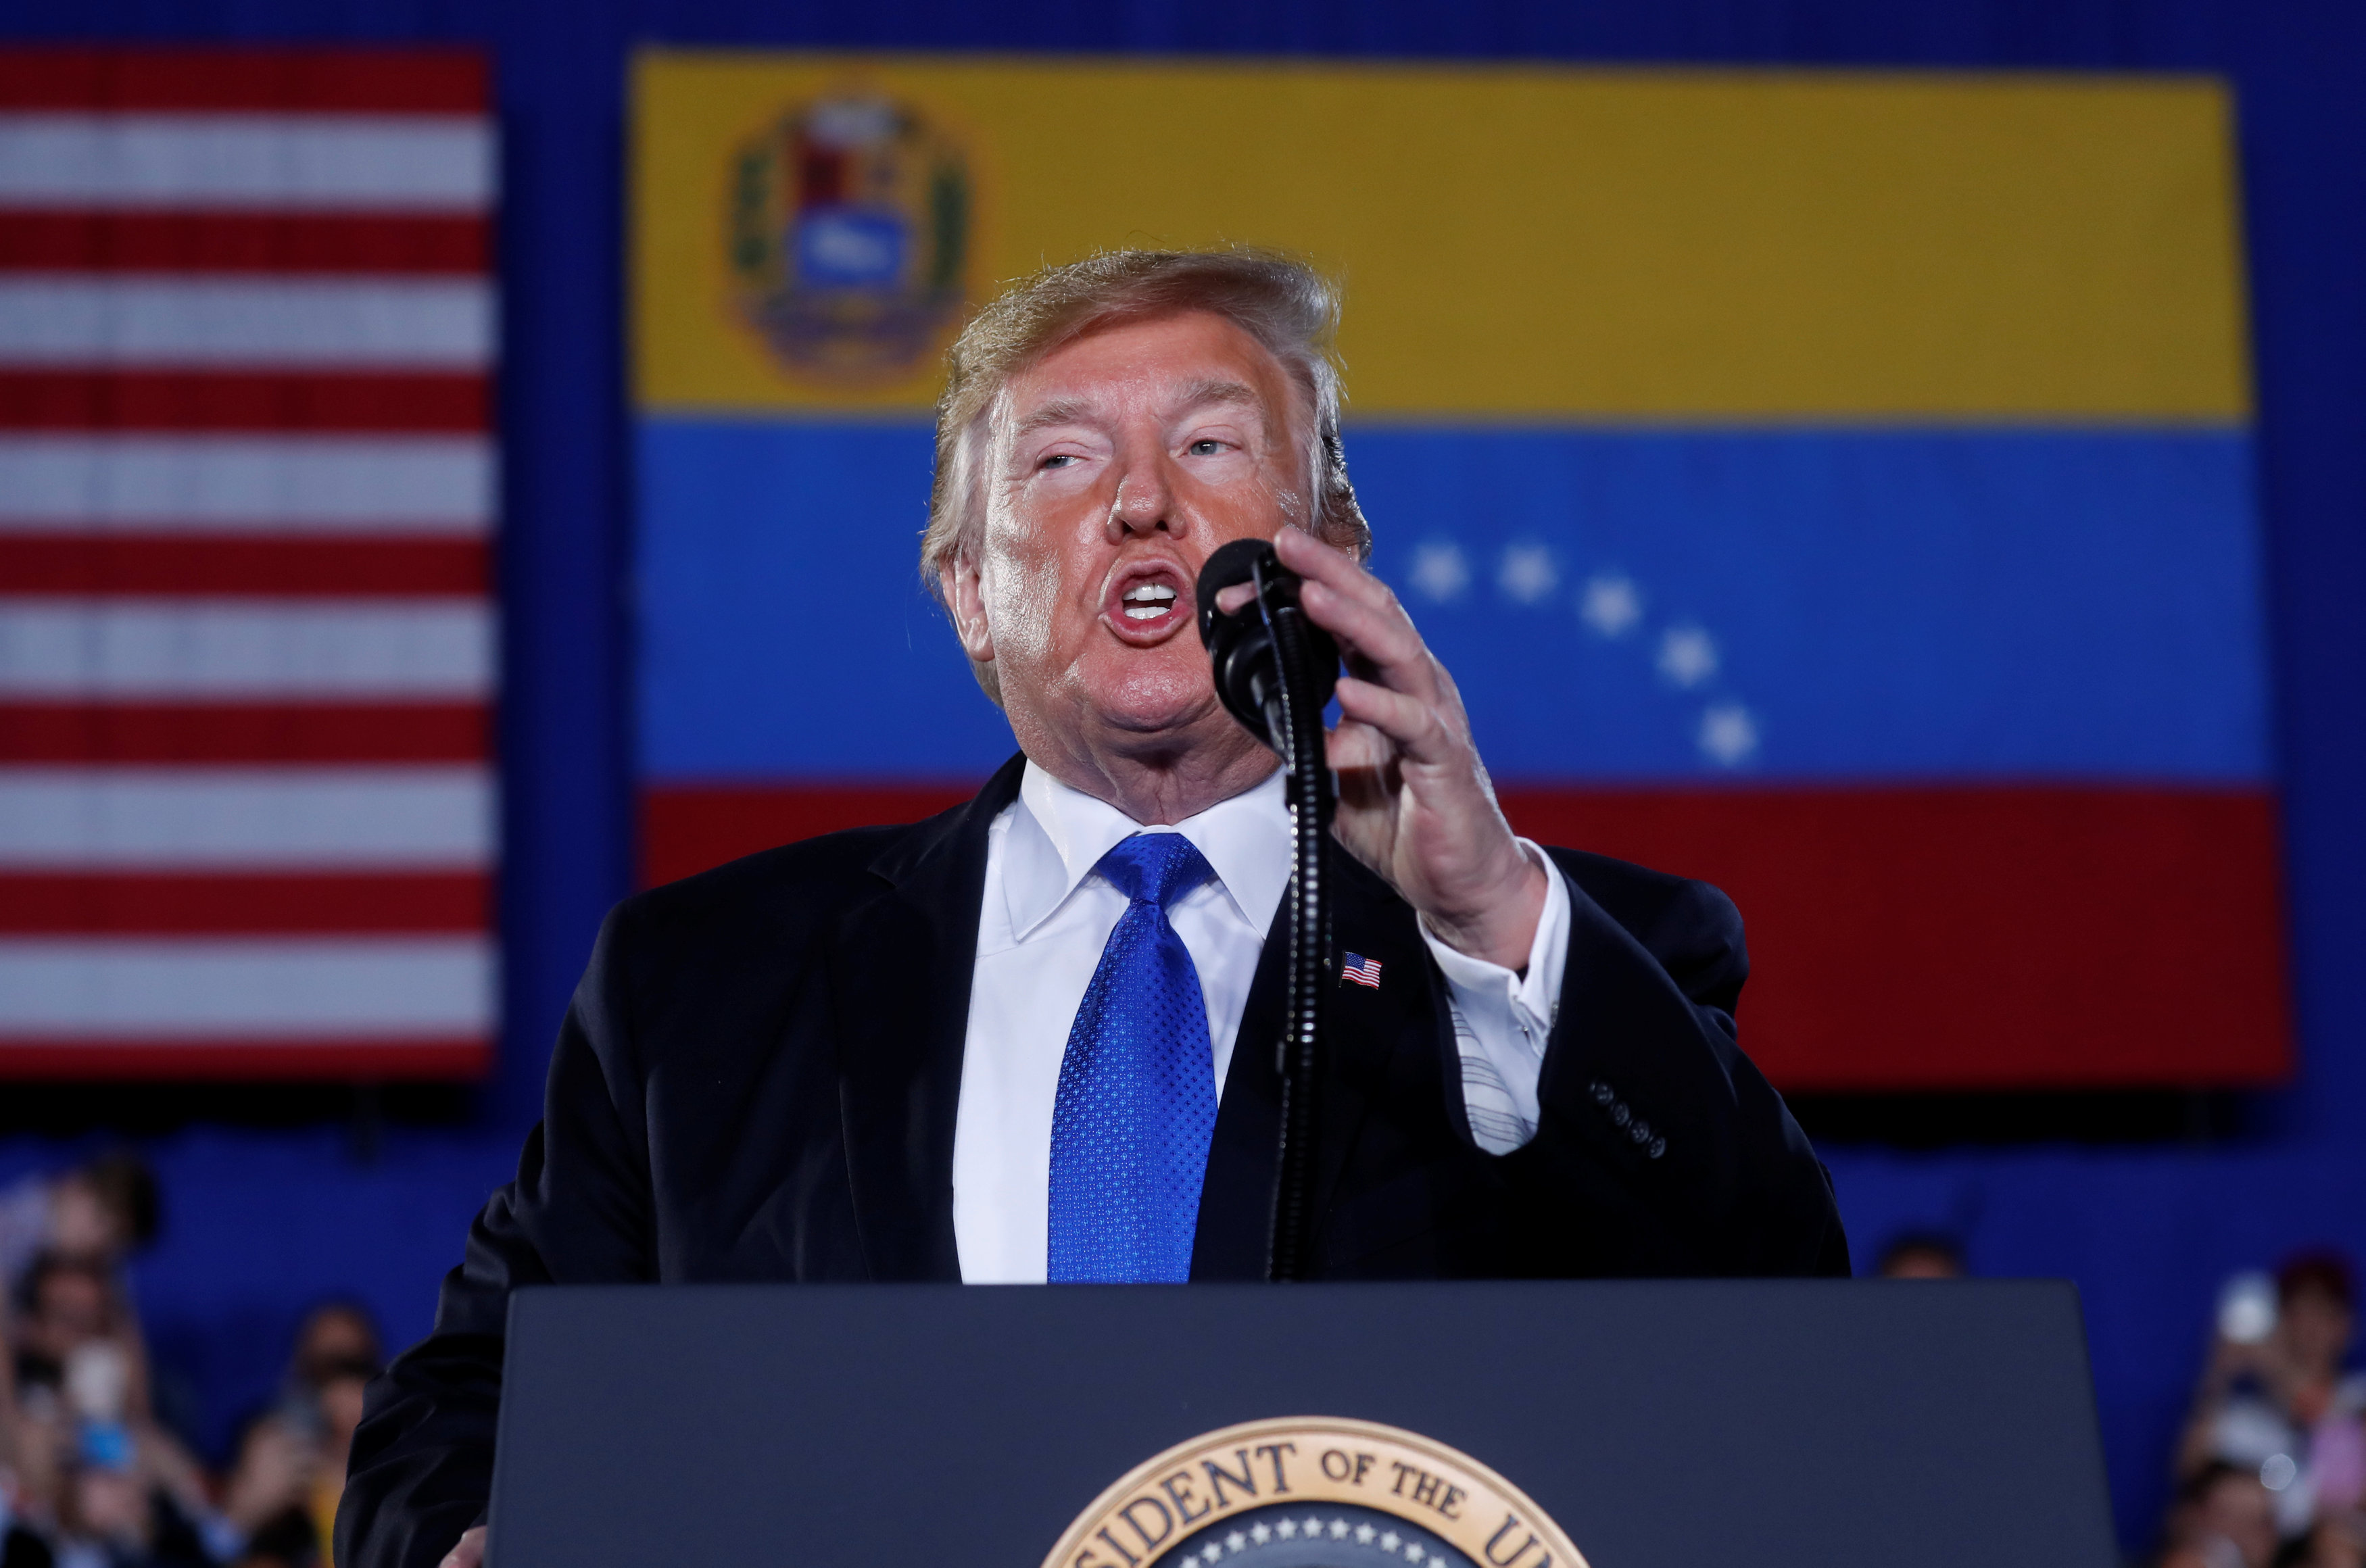 La bendición de Donald Trump sobre Venezuela (TUIT)